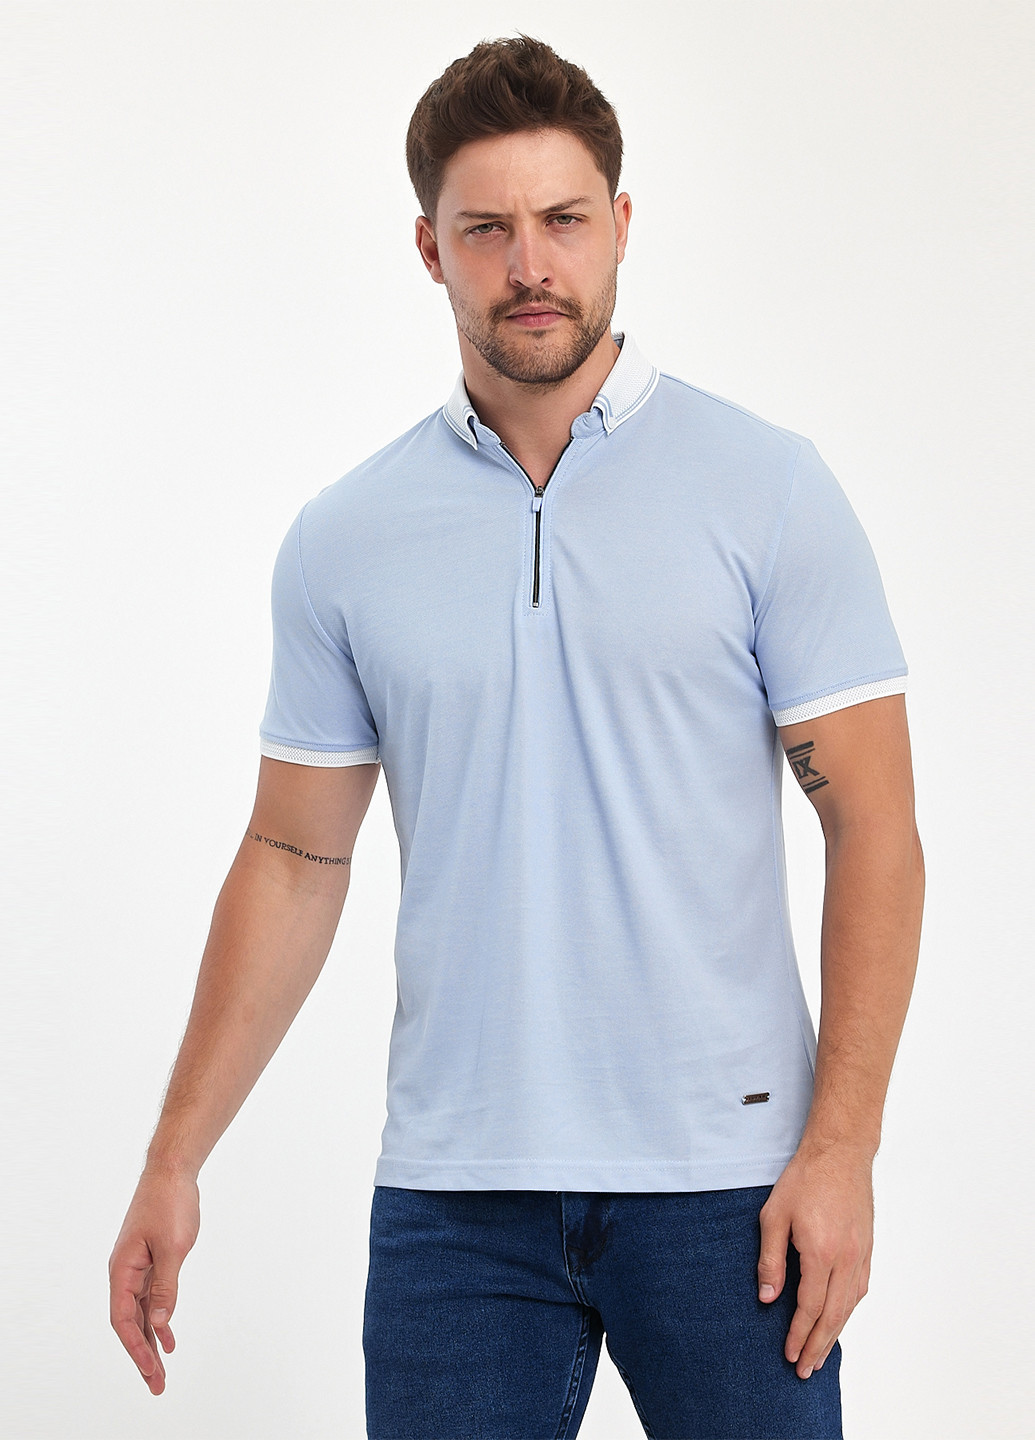 Голубой футболка-поло для мужчин Trend Collection однотонная